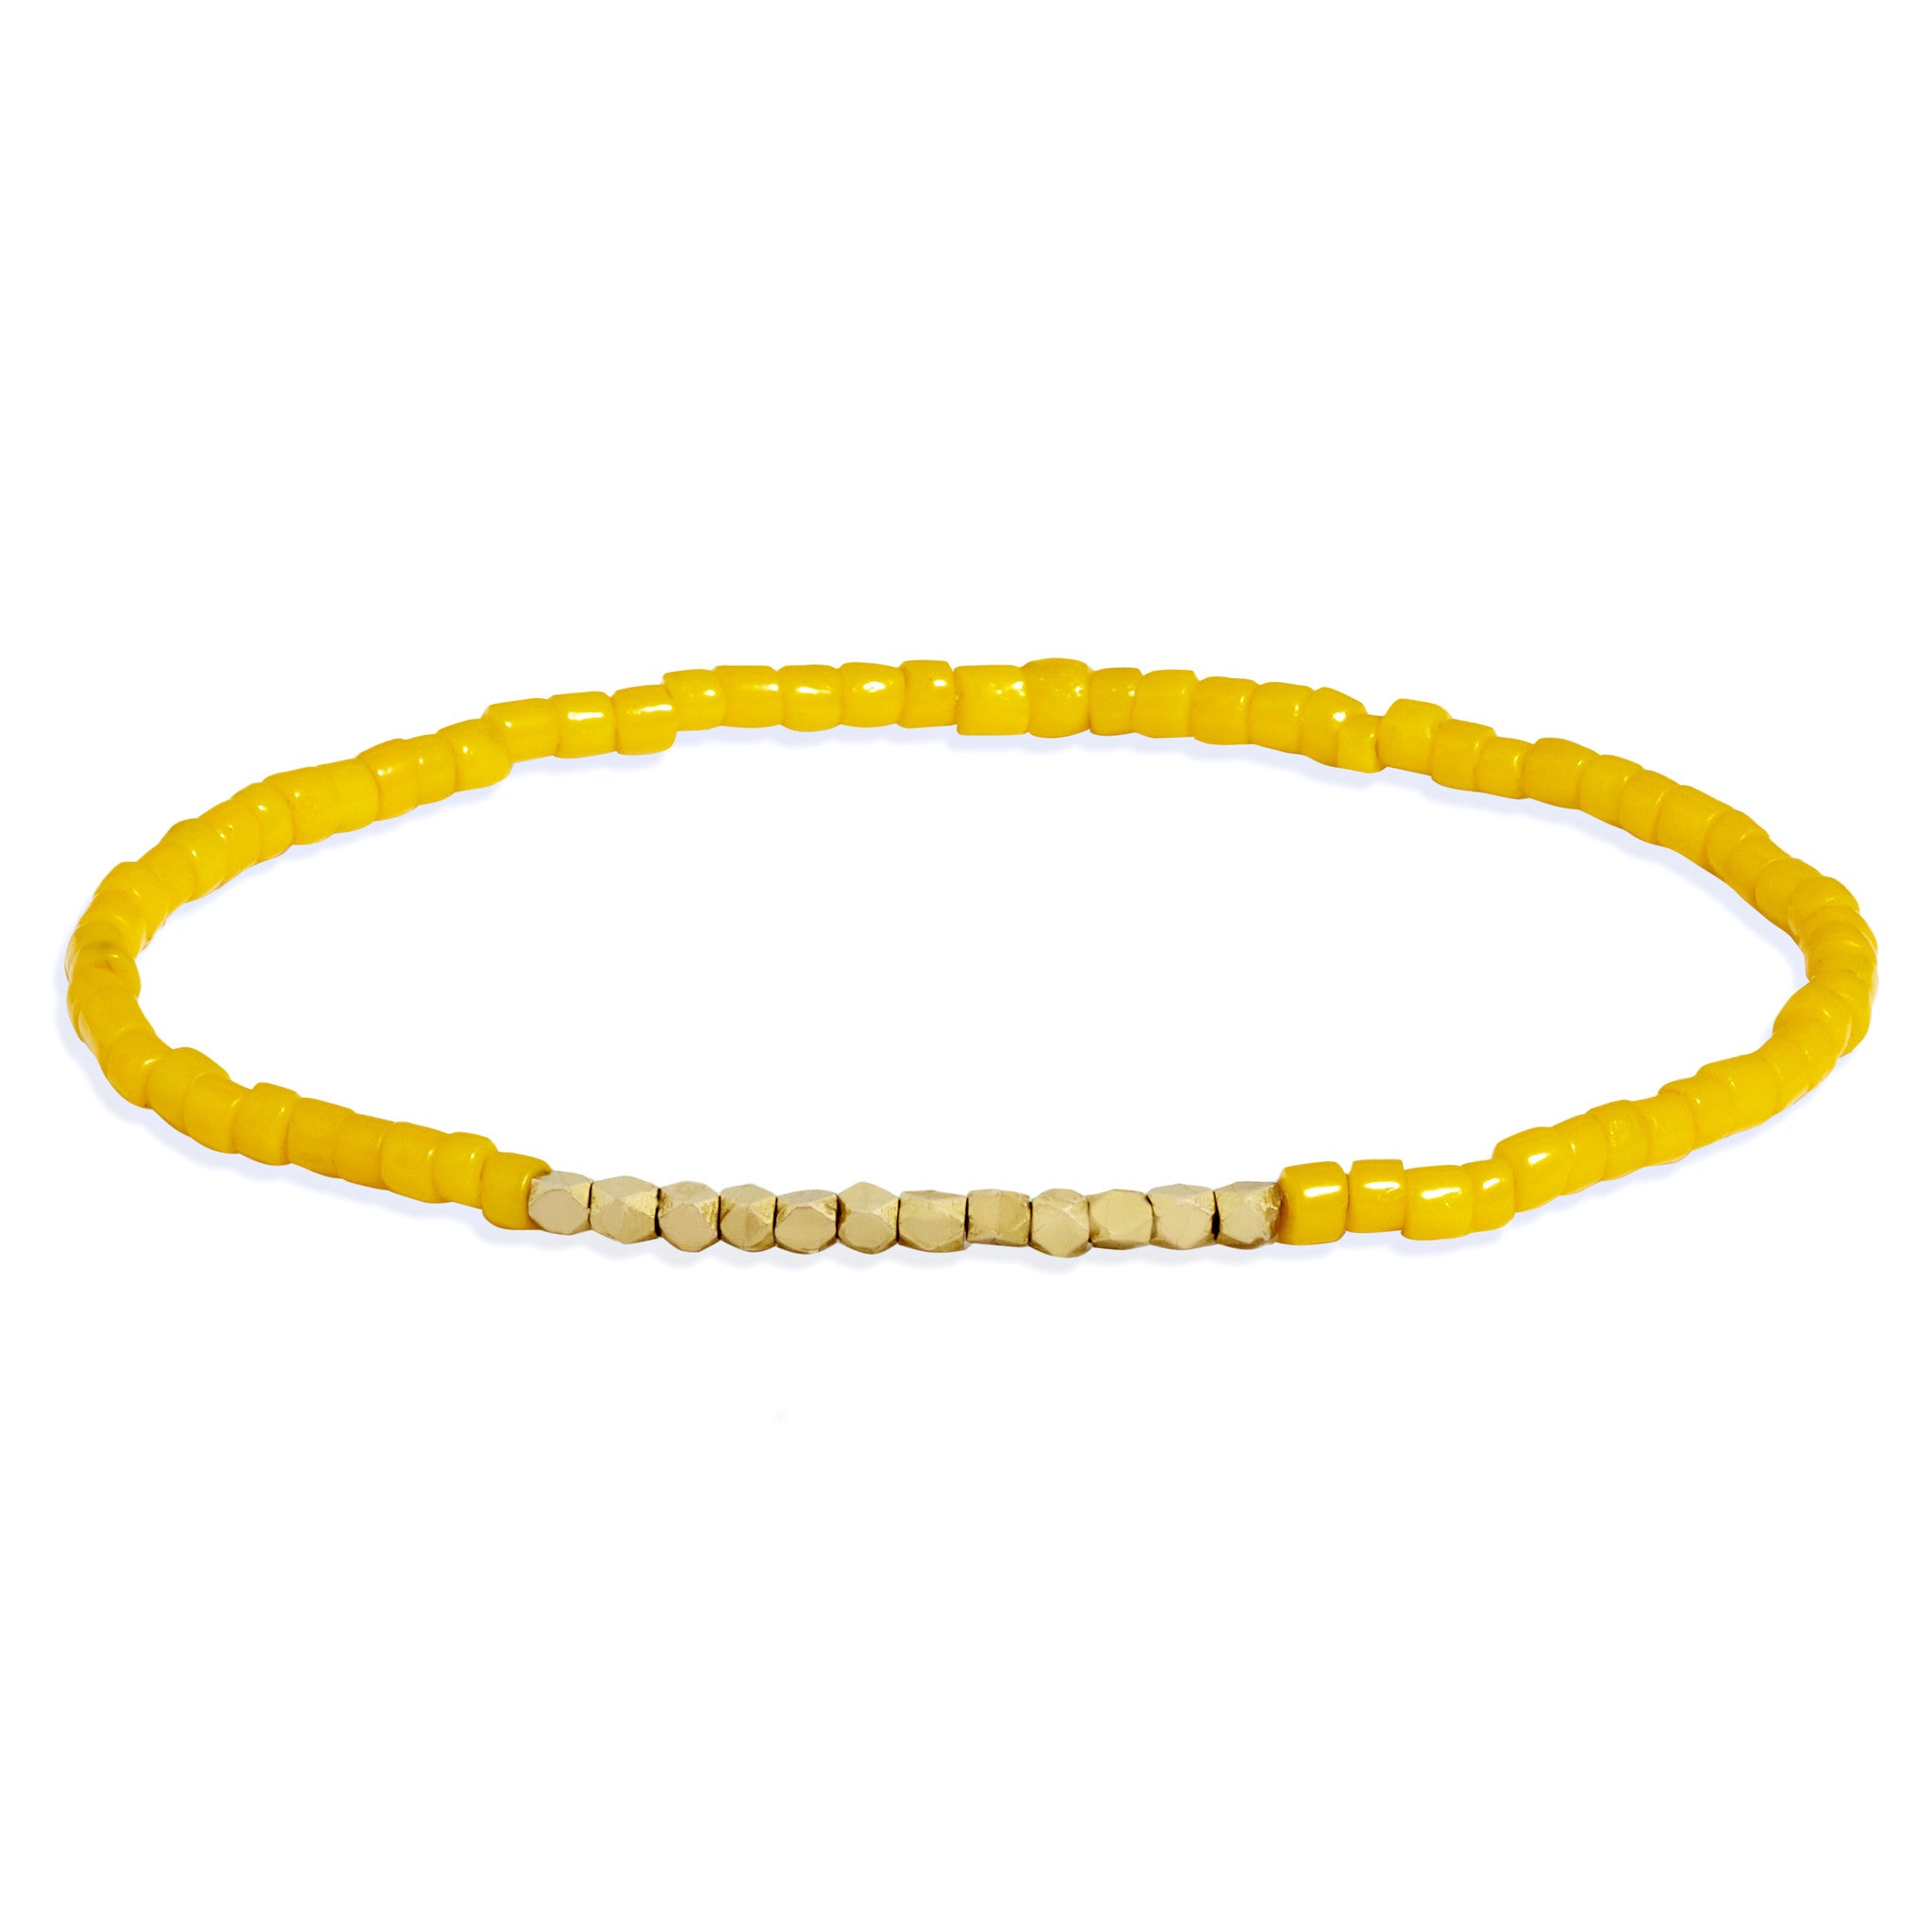 yellow beads